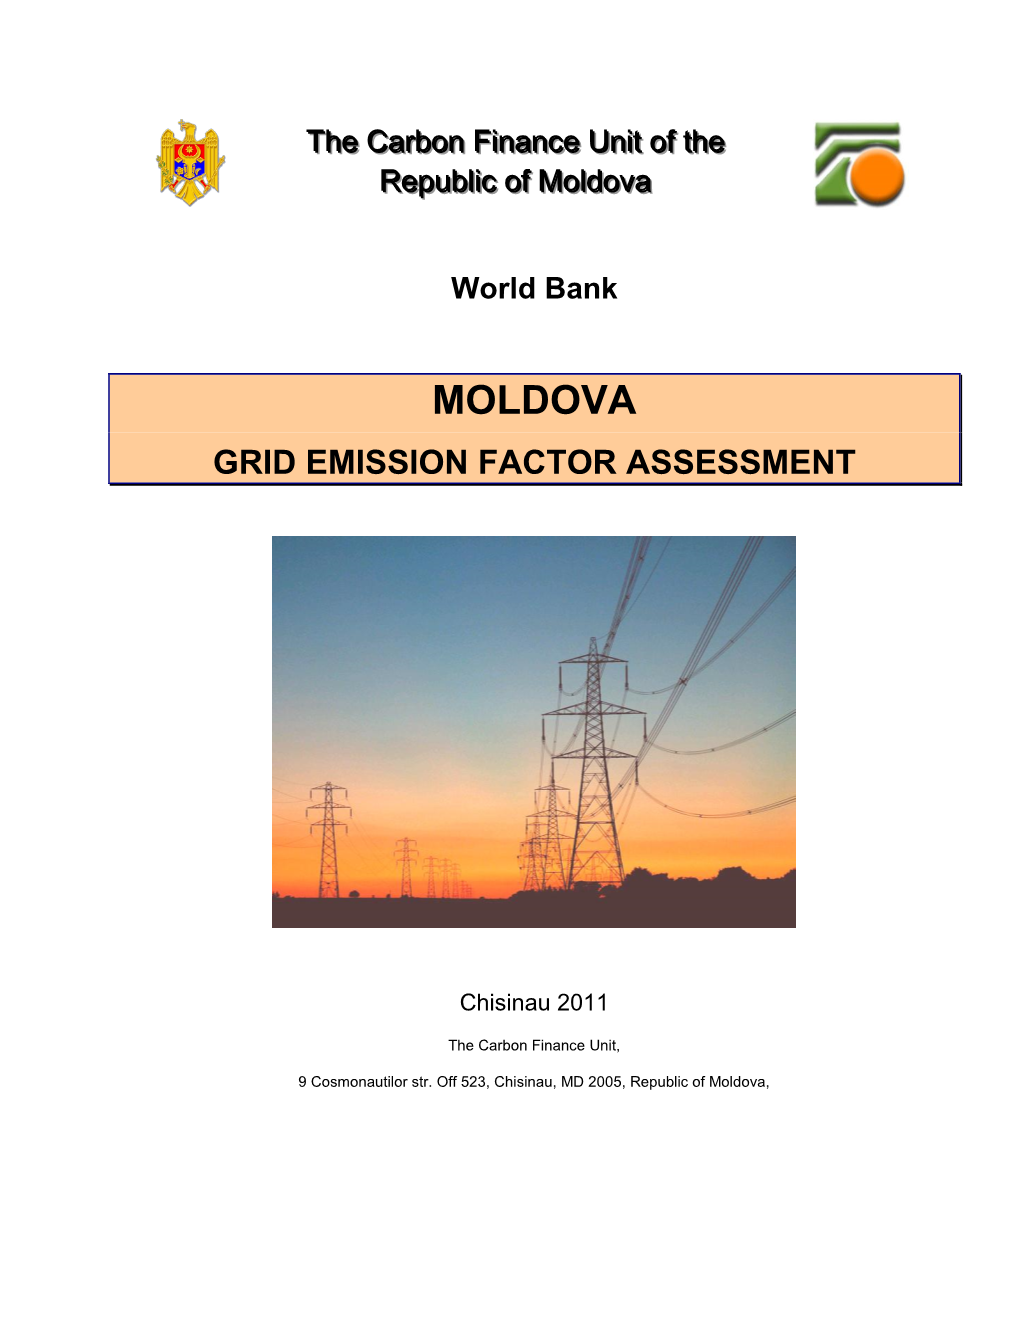 Moldova Grid Emission Factor Assessment